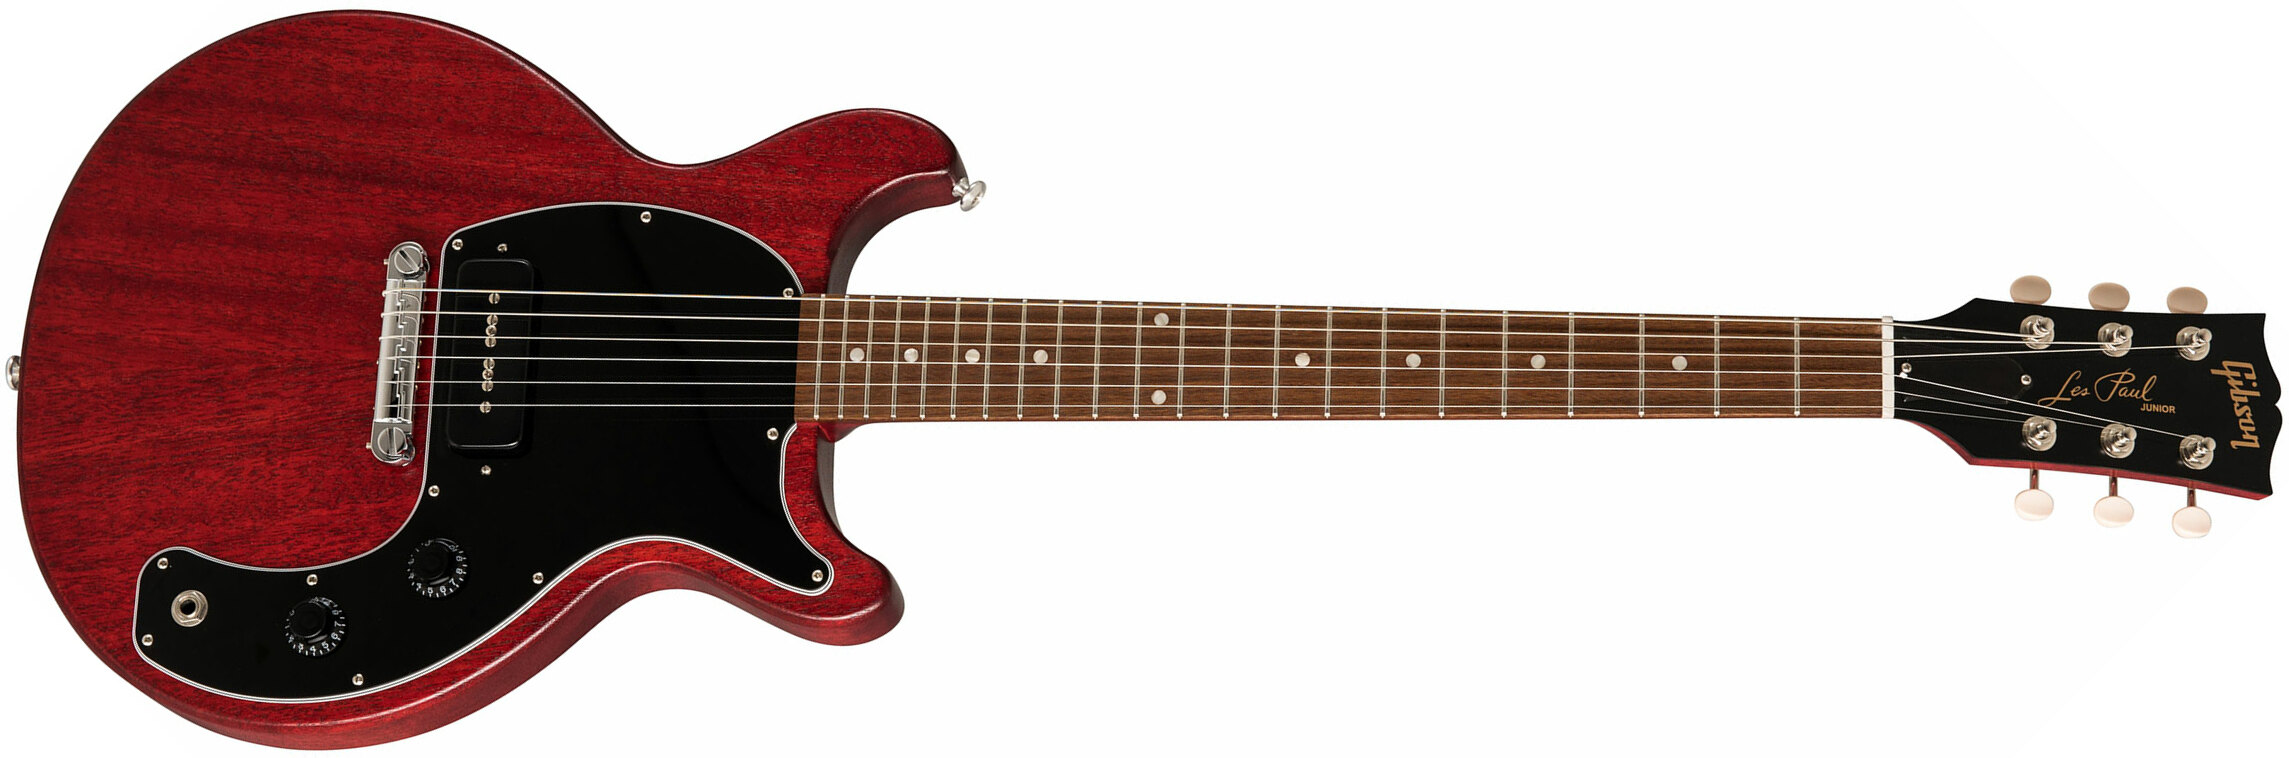 Gibson Les Paul Junior Tribute 2019 P90 Ht Rw - Worn Cherry - Guitare Électrique Single Cut - Main picture